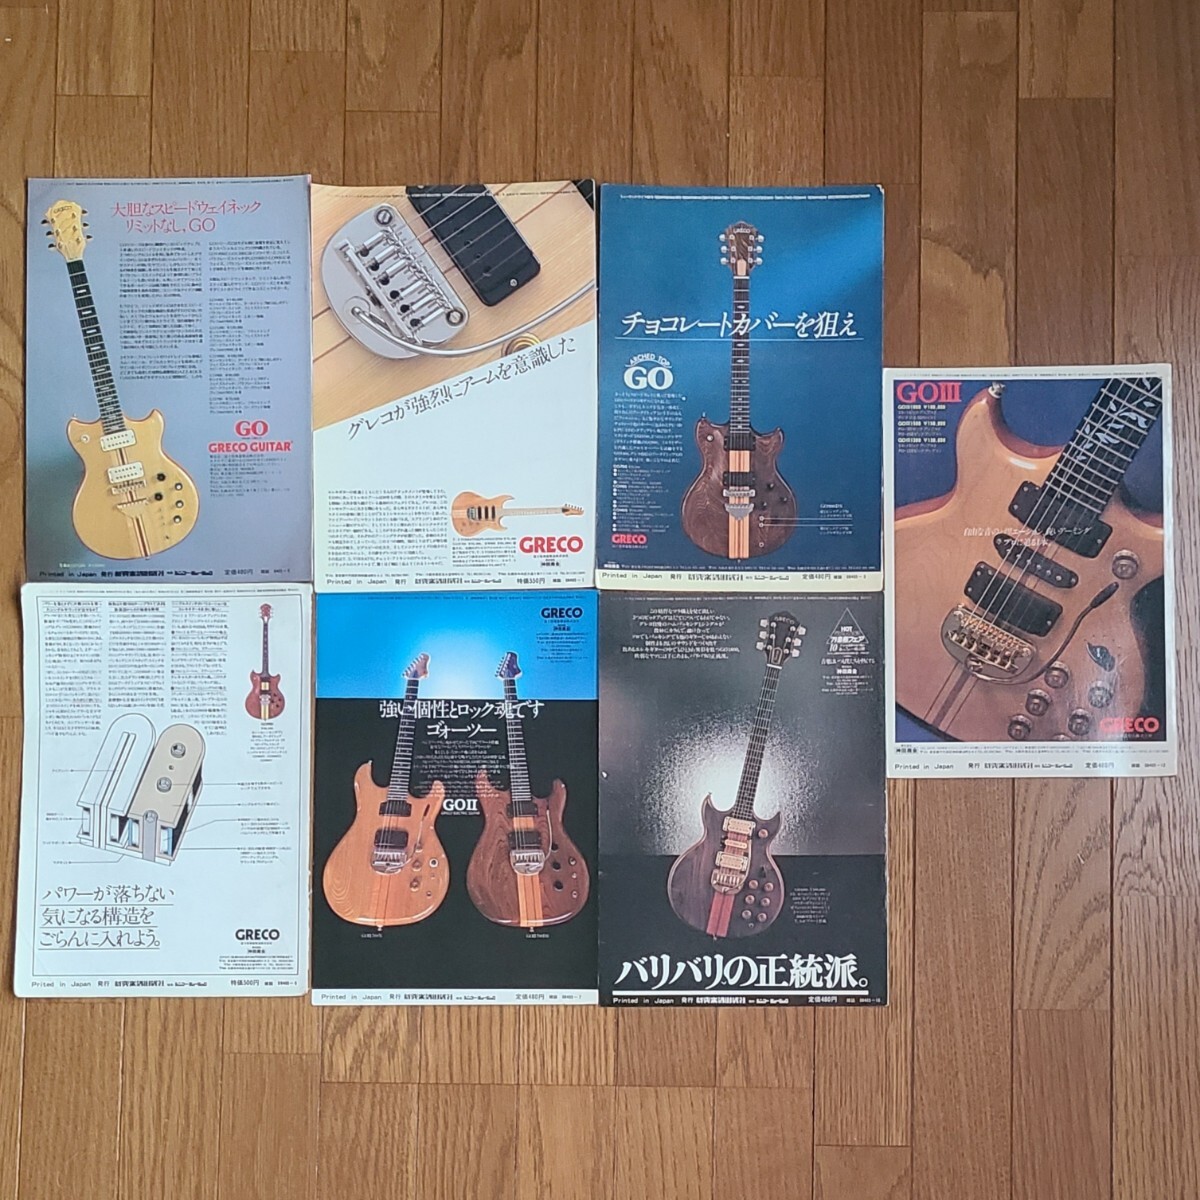 GRECO グレコ ギター広告 1978年 1979年 【切り抜き】GRECO GO GOⅡ GOⅢ モデル※雑誌裏表紙/傷みあり (裏面 日本ギブソン)_画像1